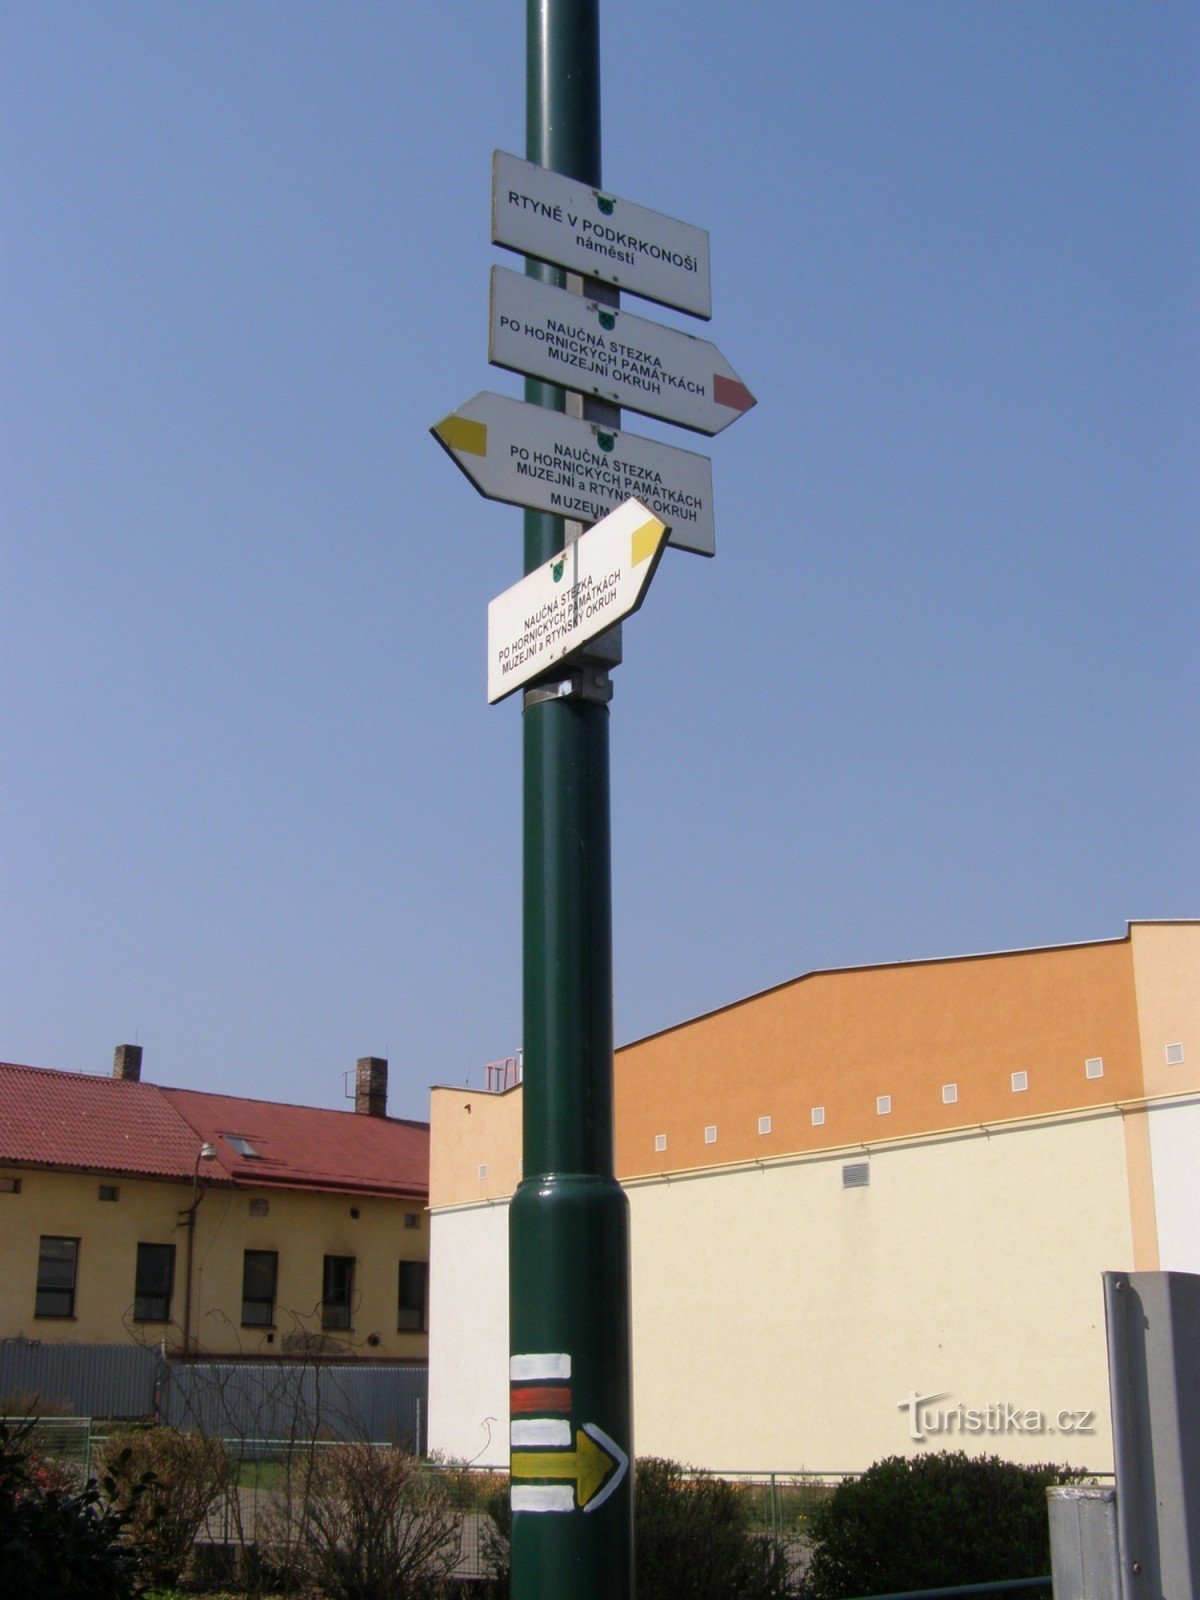 ngã tư du lịch Rtyně ở Podkrkonoší - náměstí Horníků